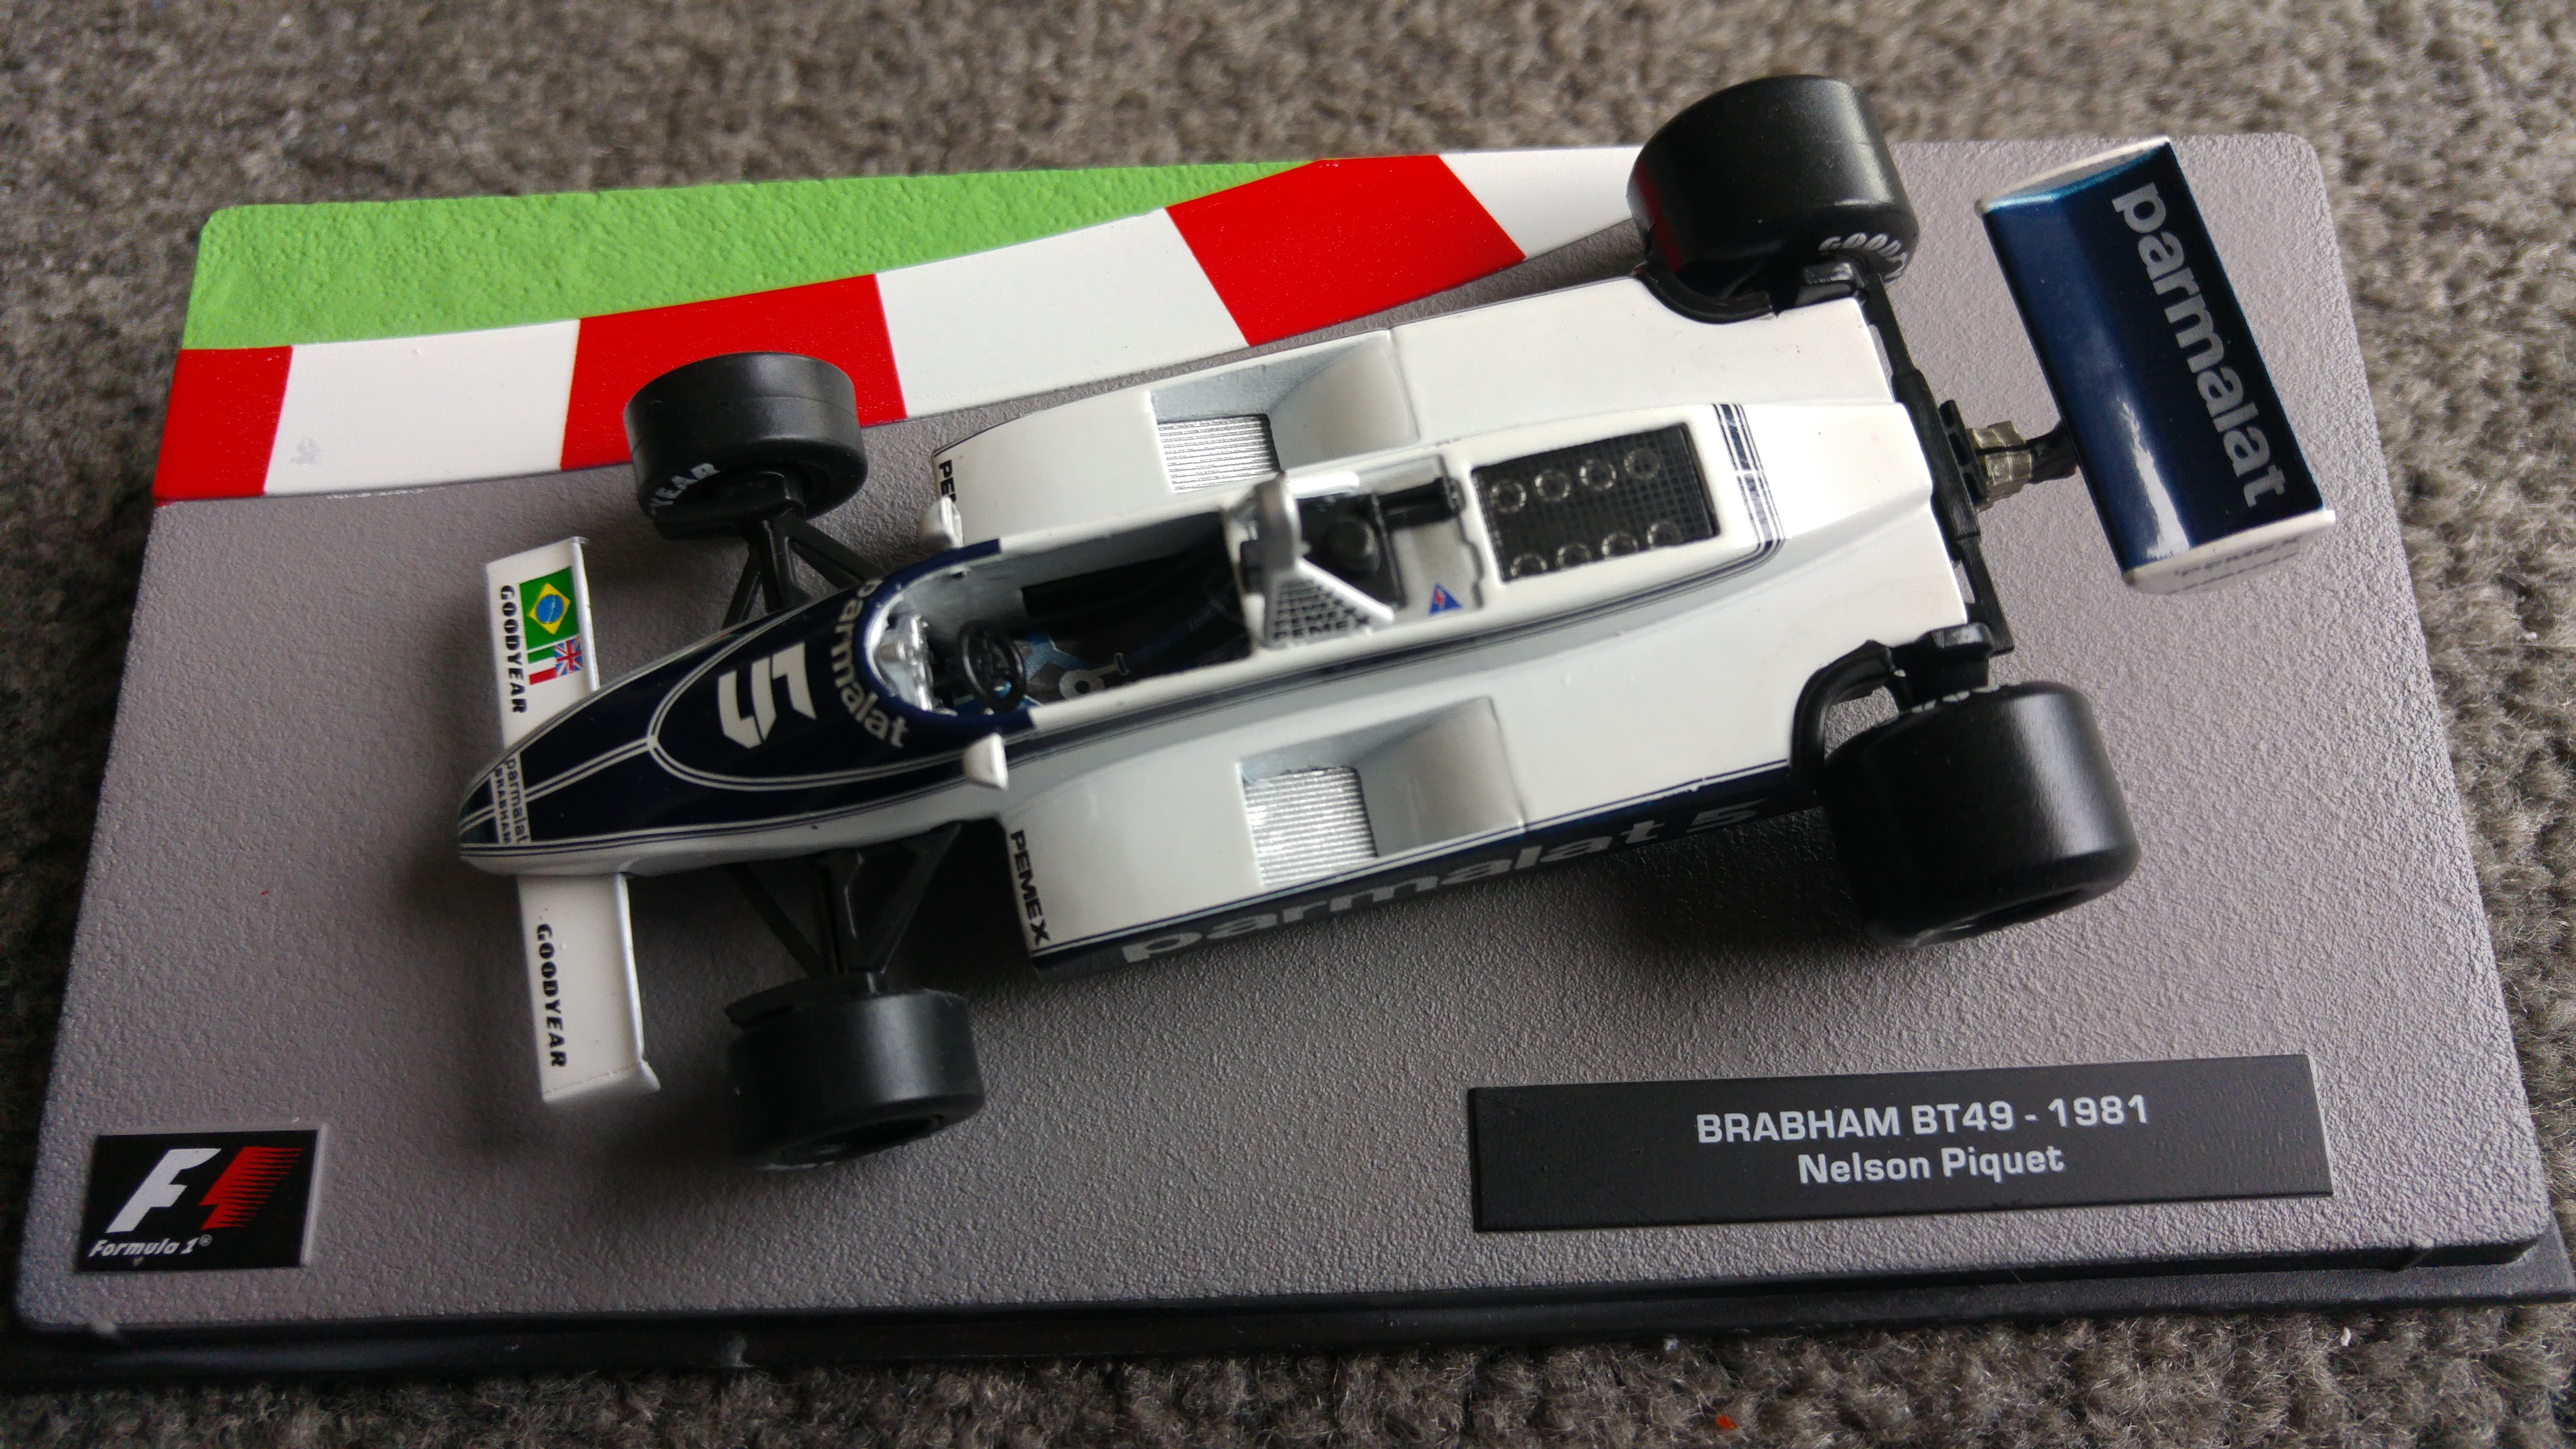 Brabham BT49 - Nelson Piquet - 1981, Model Racing Cars